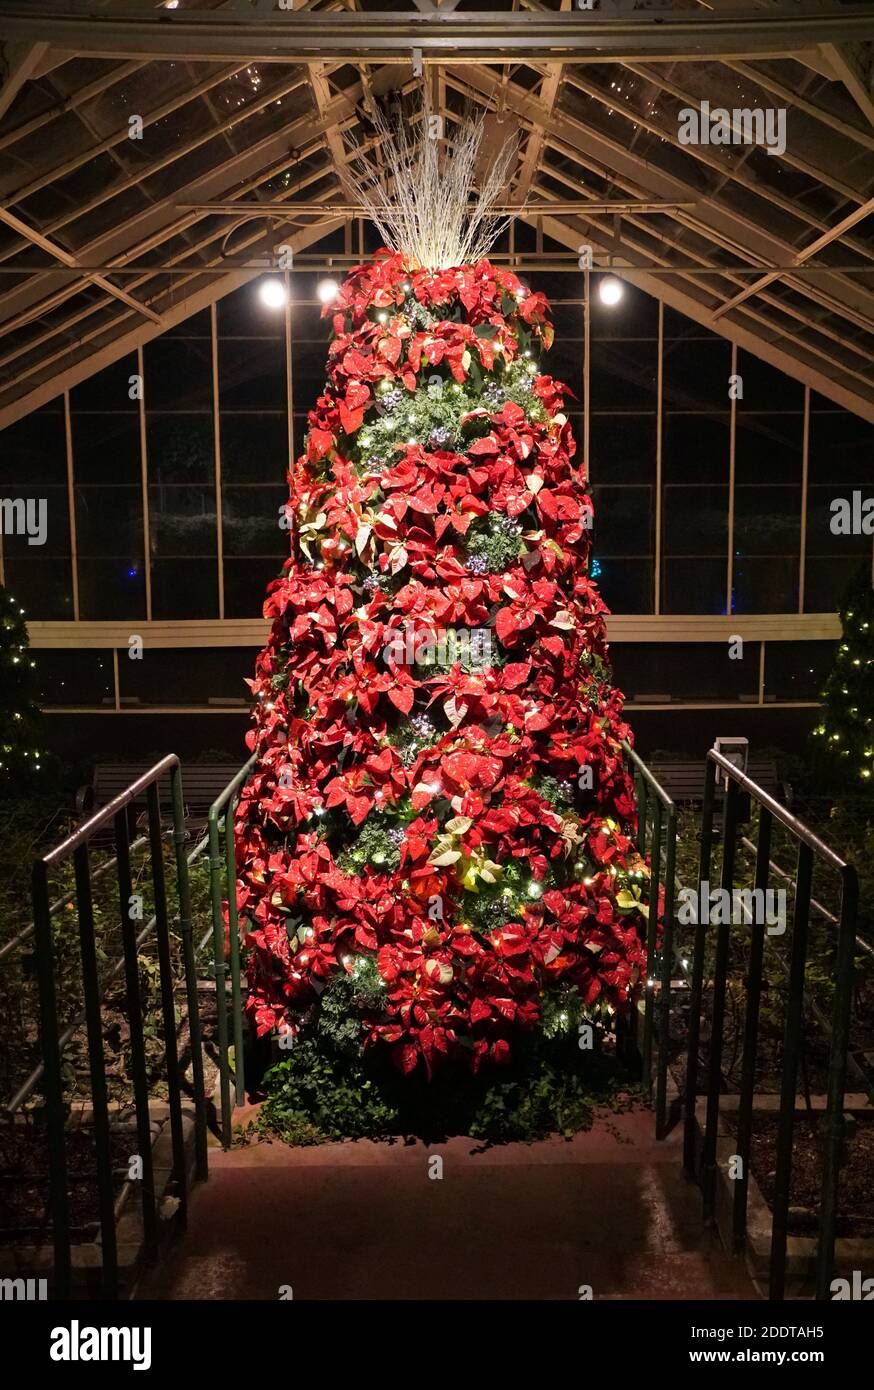 Un arbre de Noël décoré de plantes de poinsettia rouges et d'argent ornements Banque D'Images